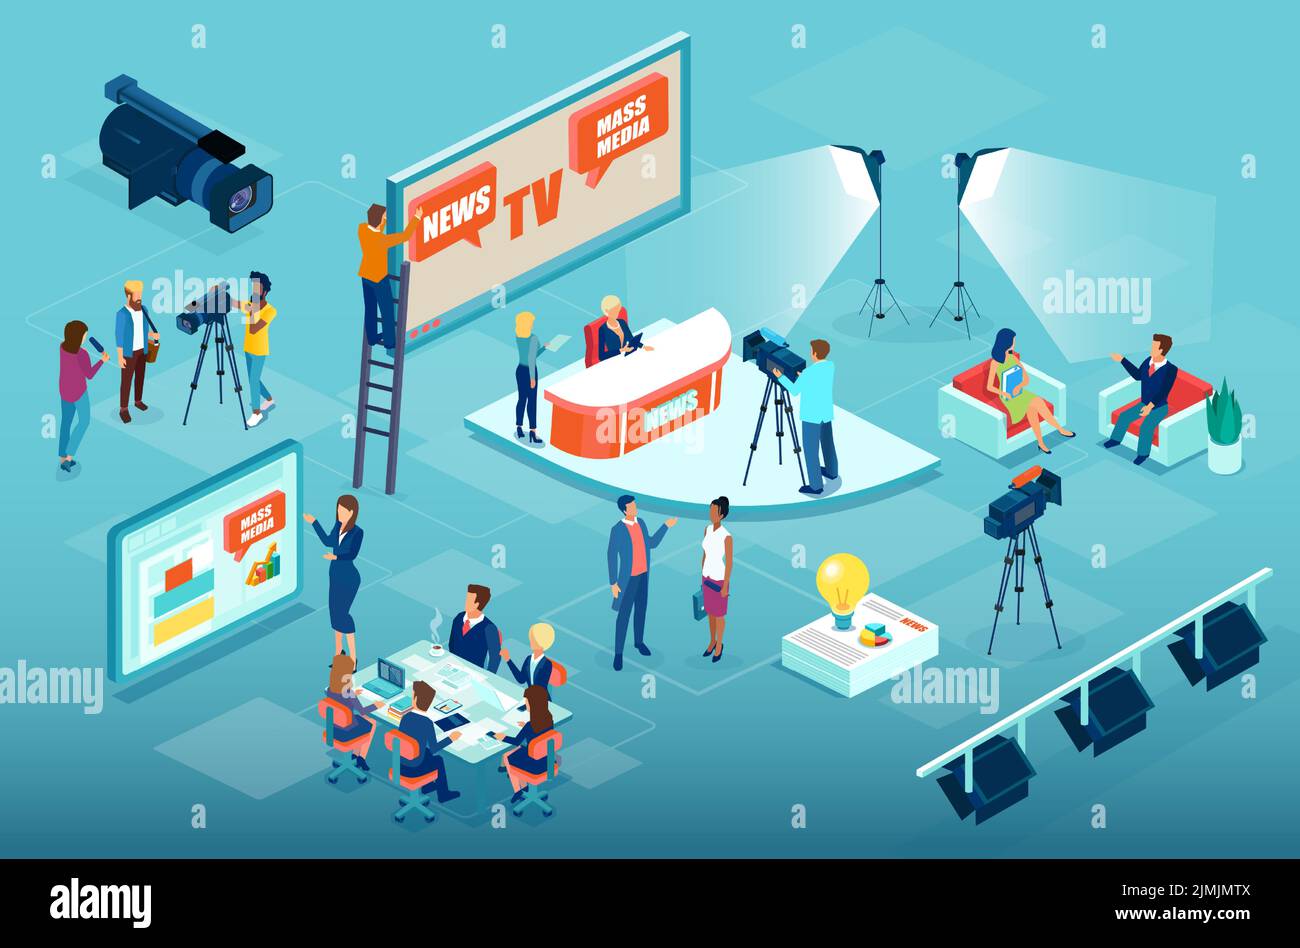 Processo di produzione di mass media e gestione aziendale con giornalisti che preparano materiale informativo, operatori e intervistatori e dirigenti aziendali di Illustrazione Vettoriale